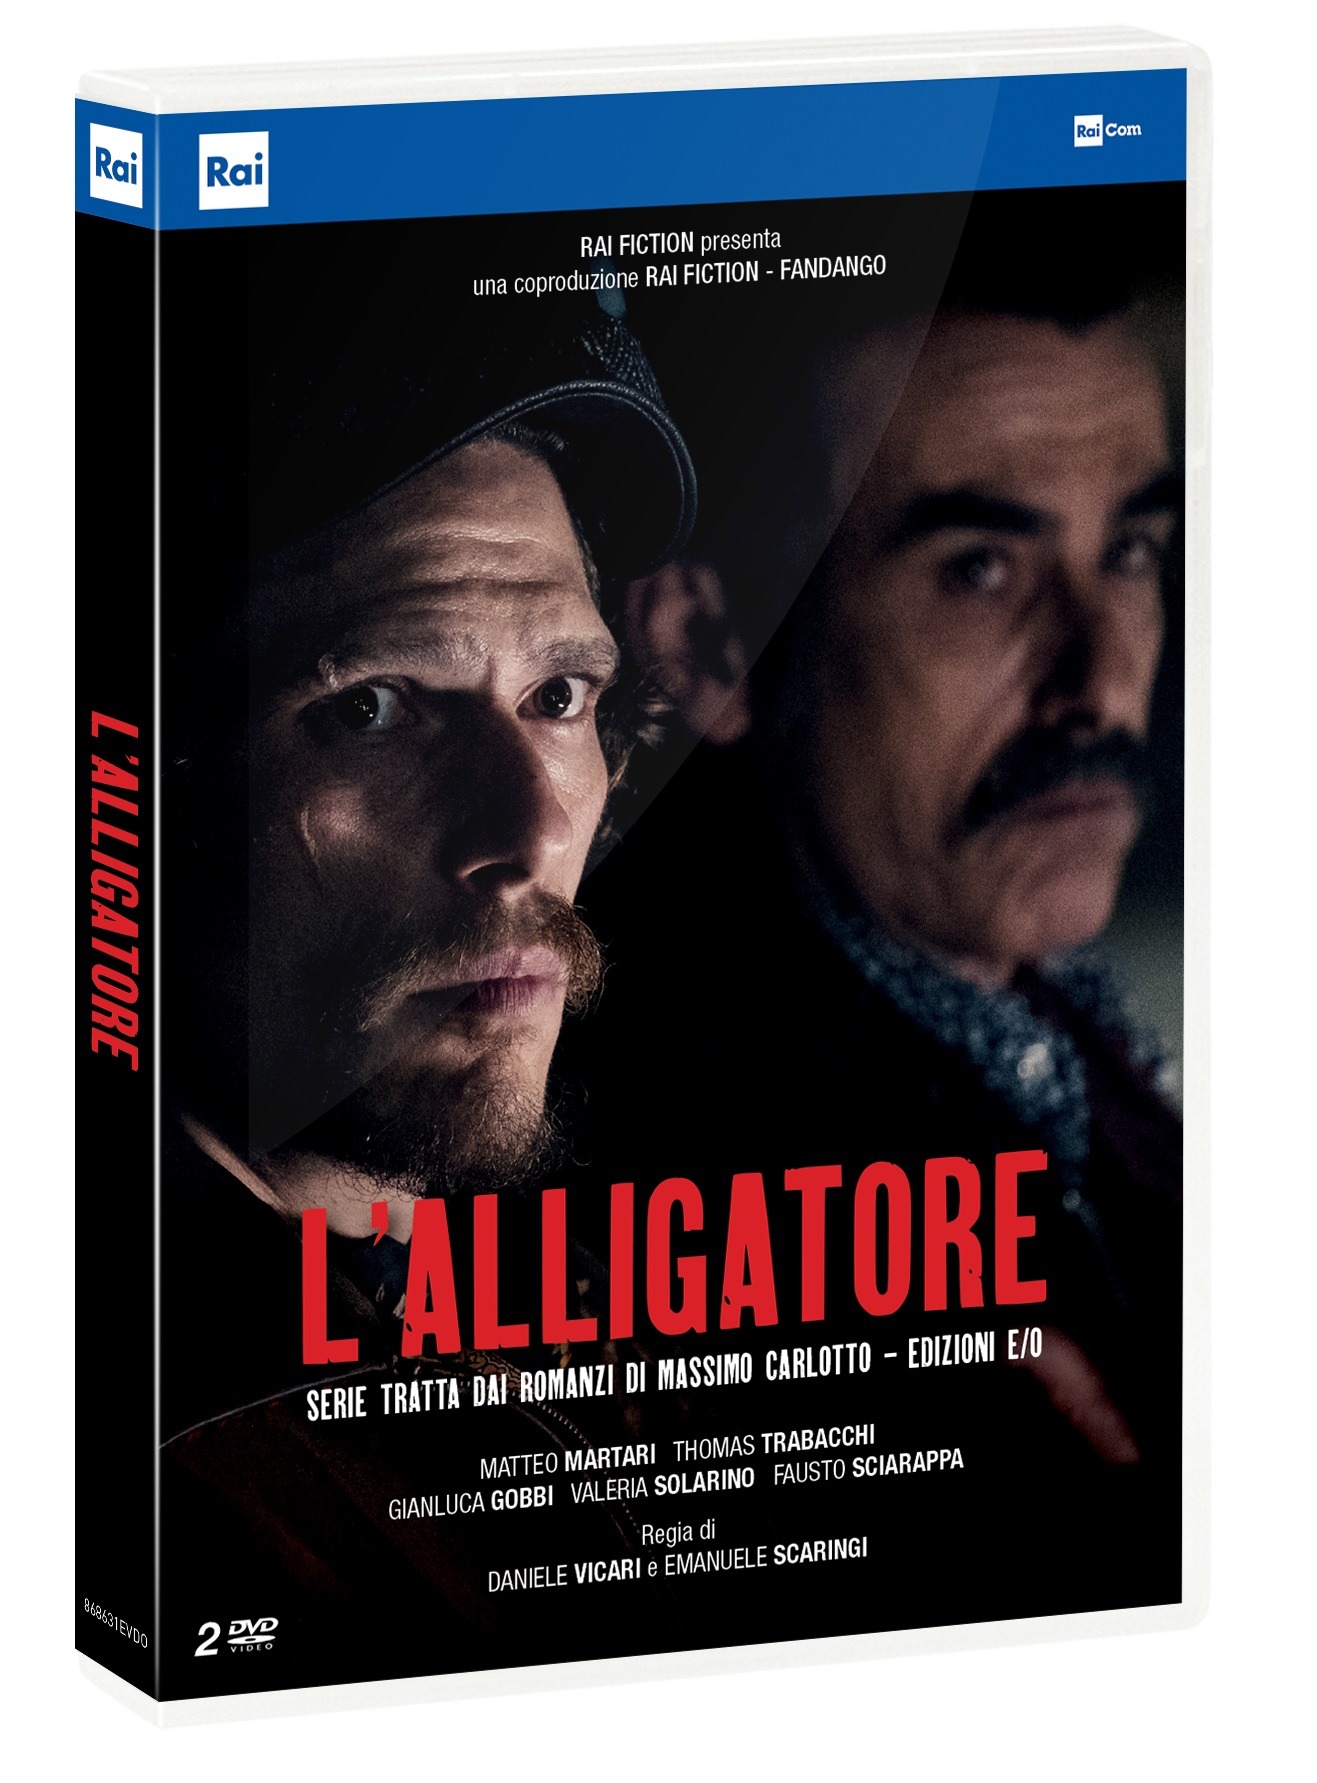 Dvd Alligatore (L') (2 Dvd) NUOVO SIGILLATO, EDIZIONE DEL 17/02/2021 SUBITO DISPONIBILE